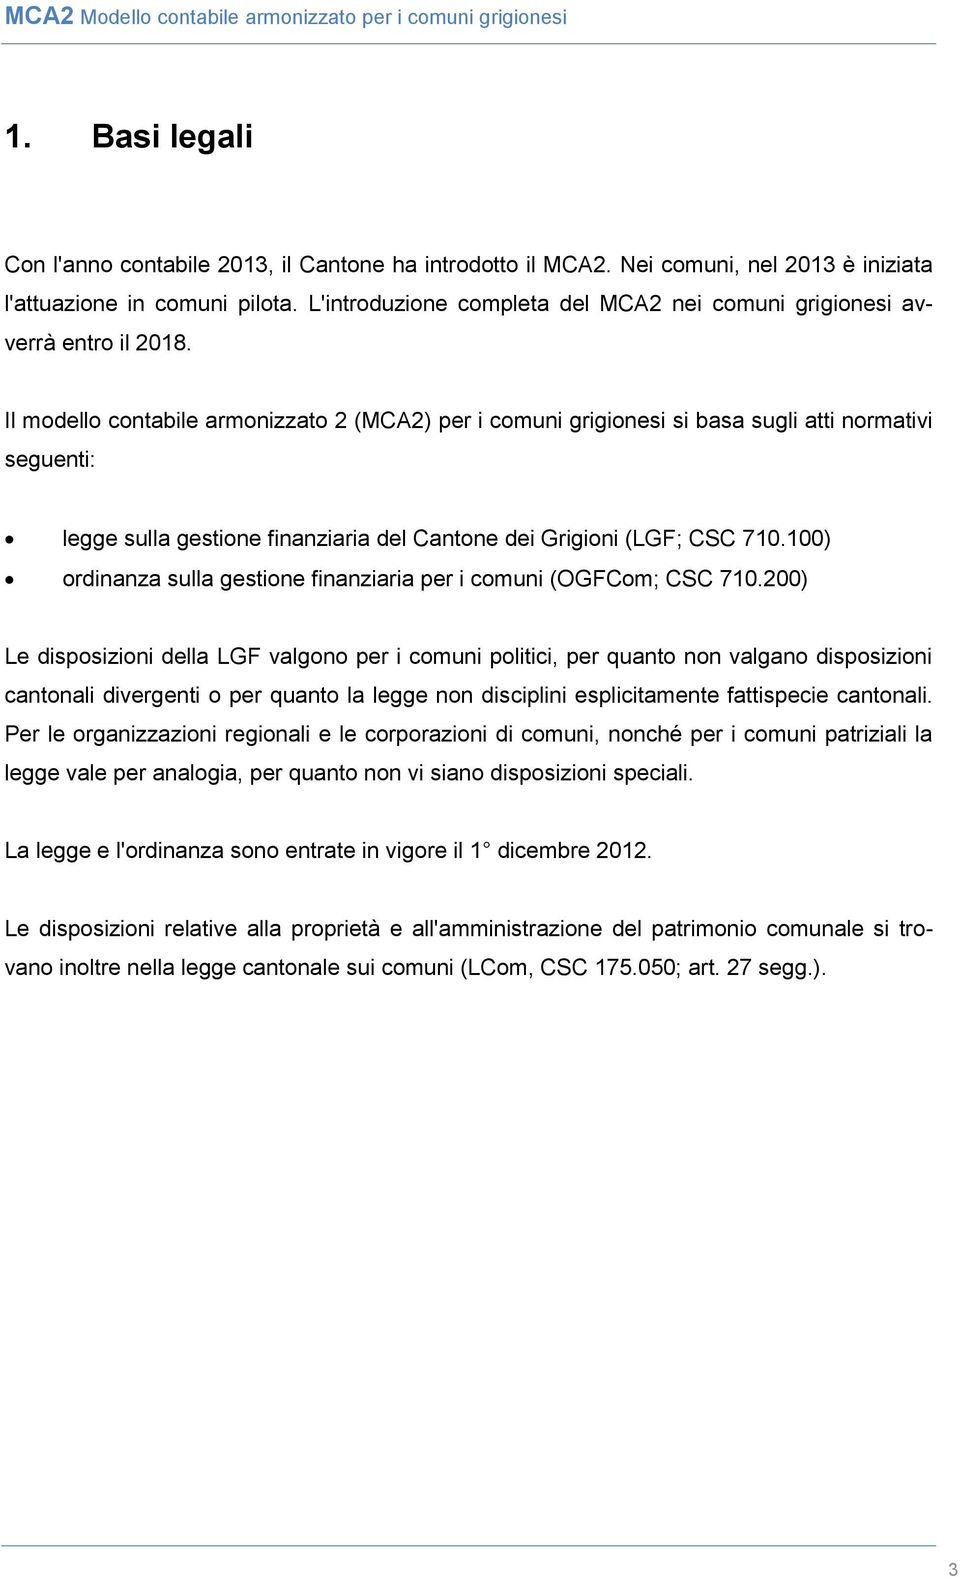 Il modello contabile armonizzato 2 (MCA2) per i comuni grigionesi si basa sugli atti normativi seguenti: legge sulla gestione finanziaria del Cantone dei Grigioni (LGF; CSC 710.